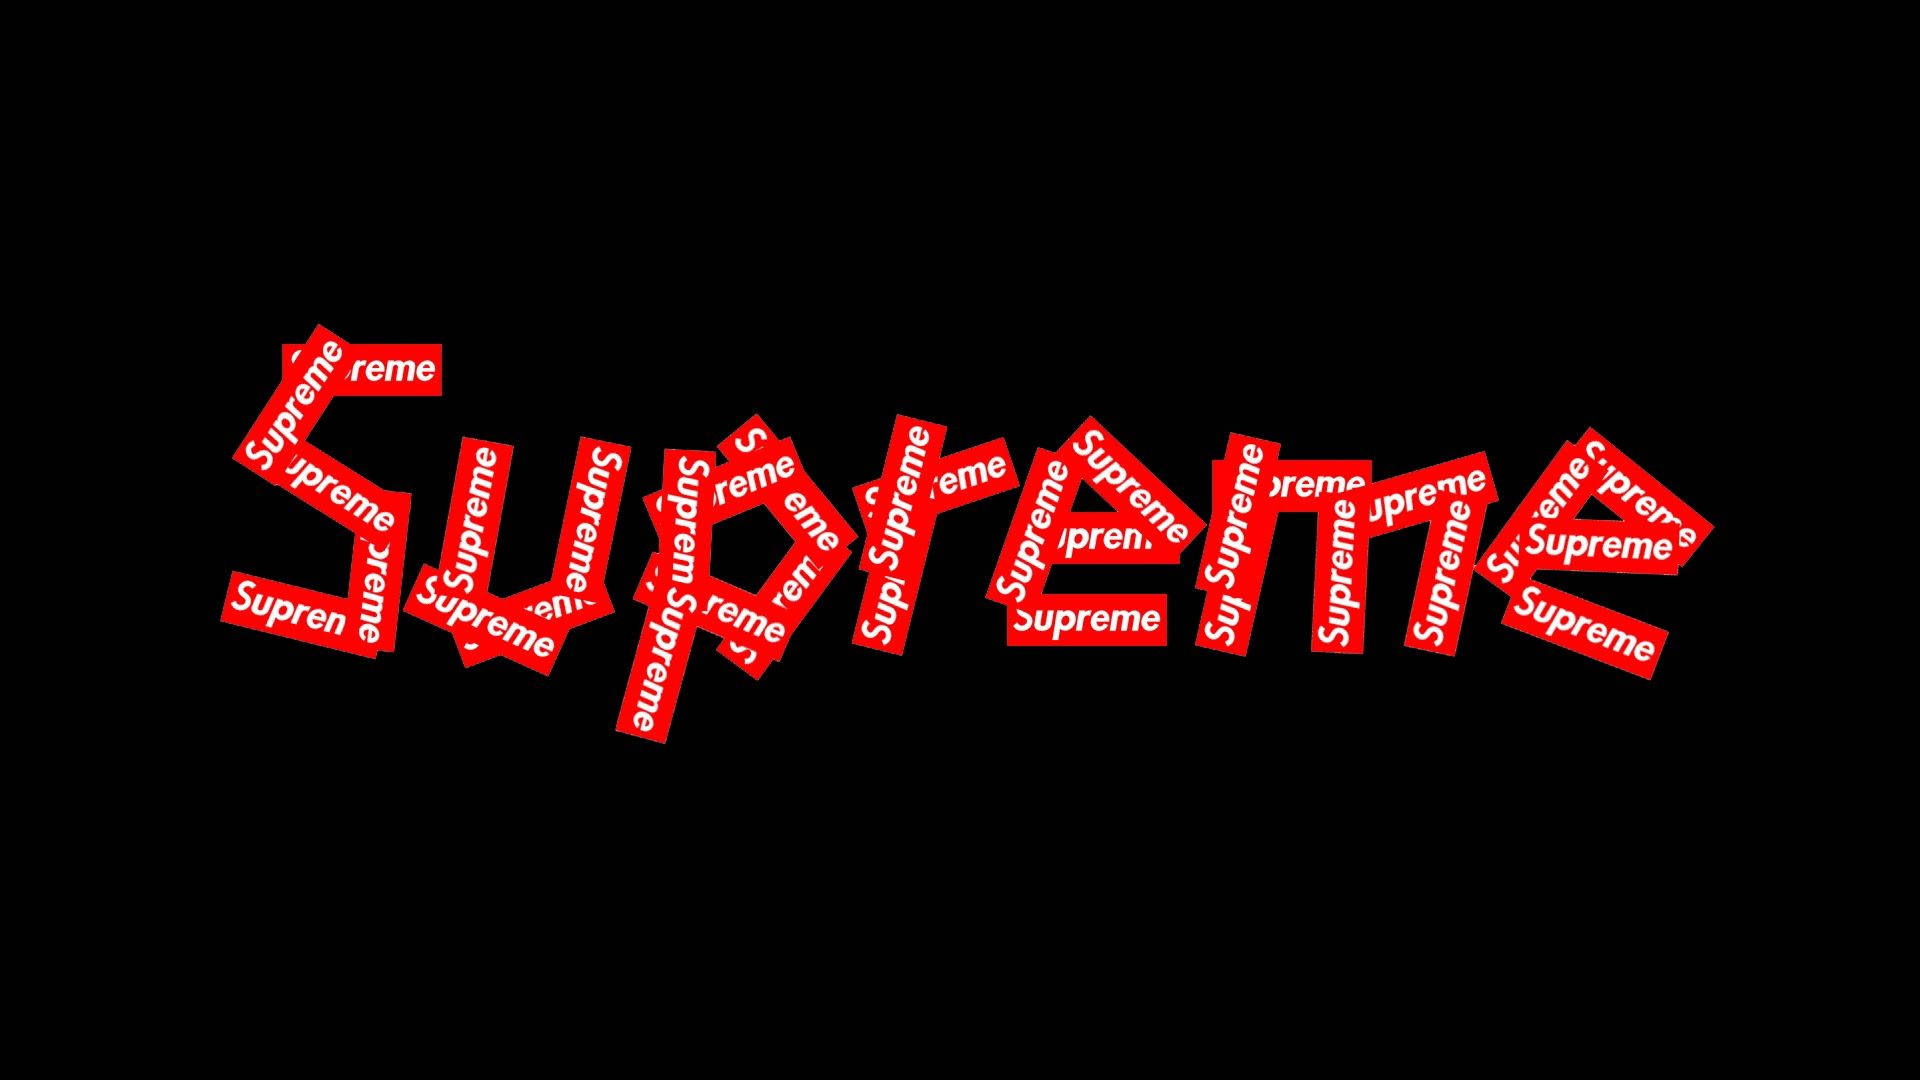 Røde Supreme Logos På Sort Baggrund Wallpaper